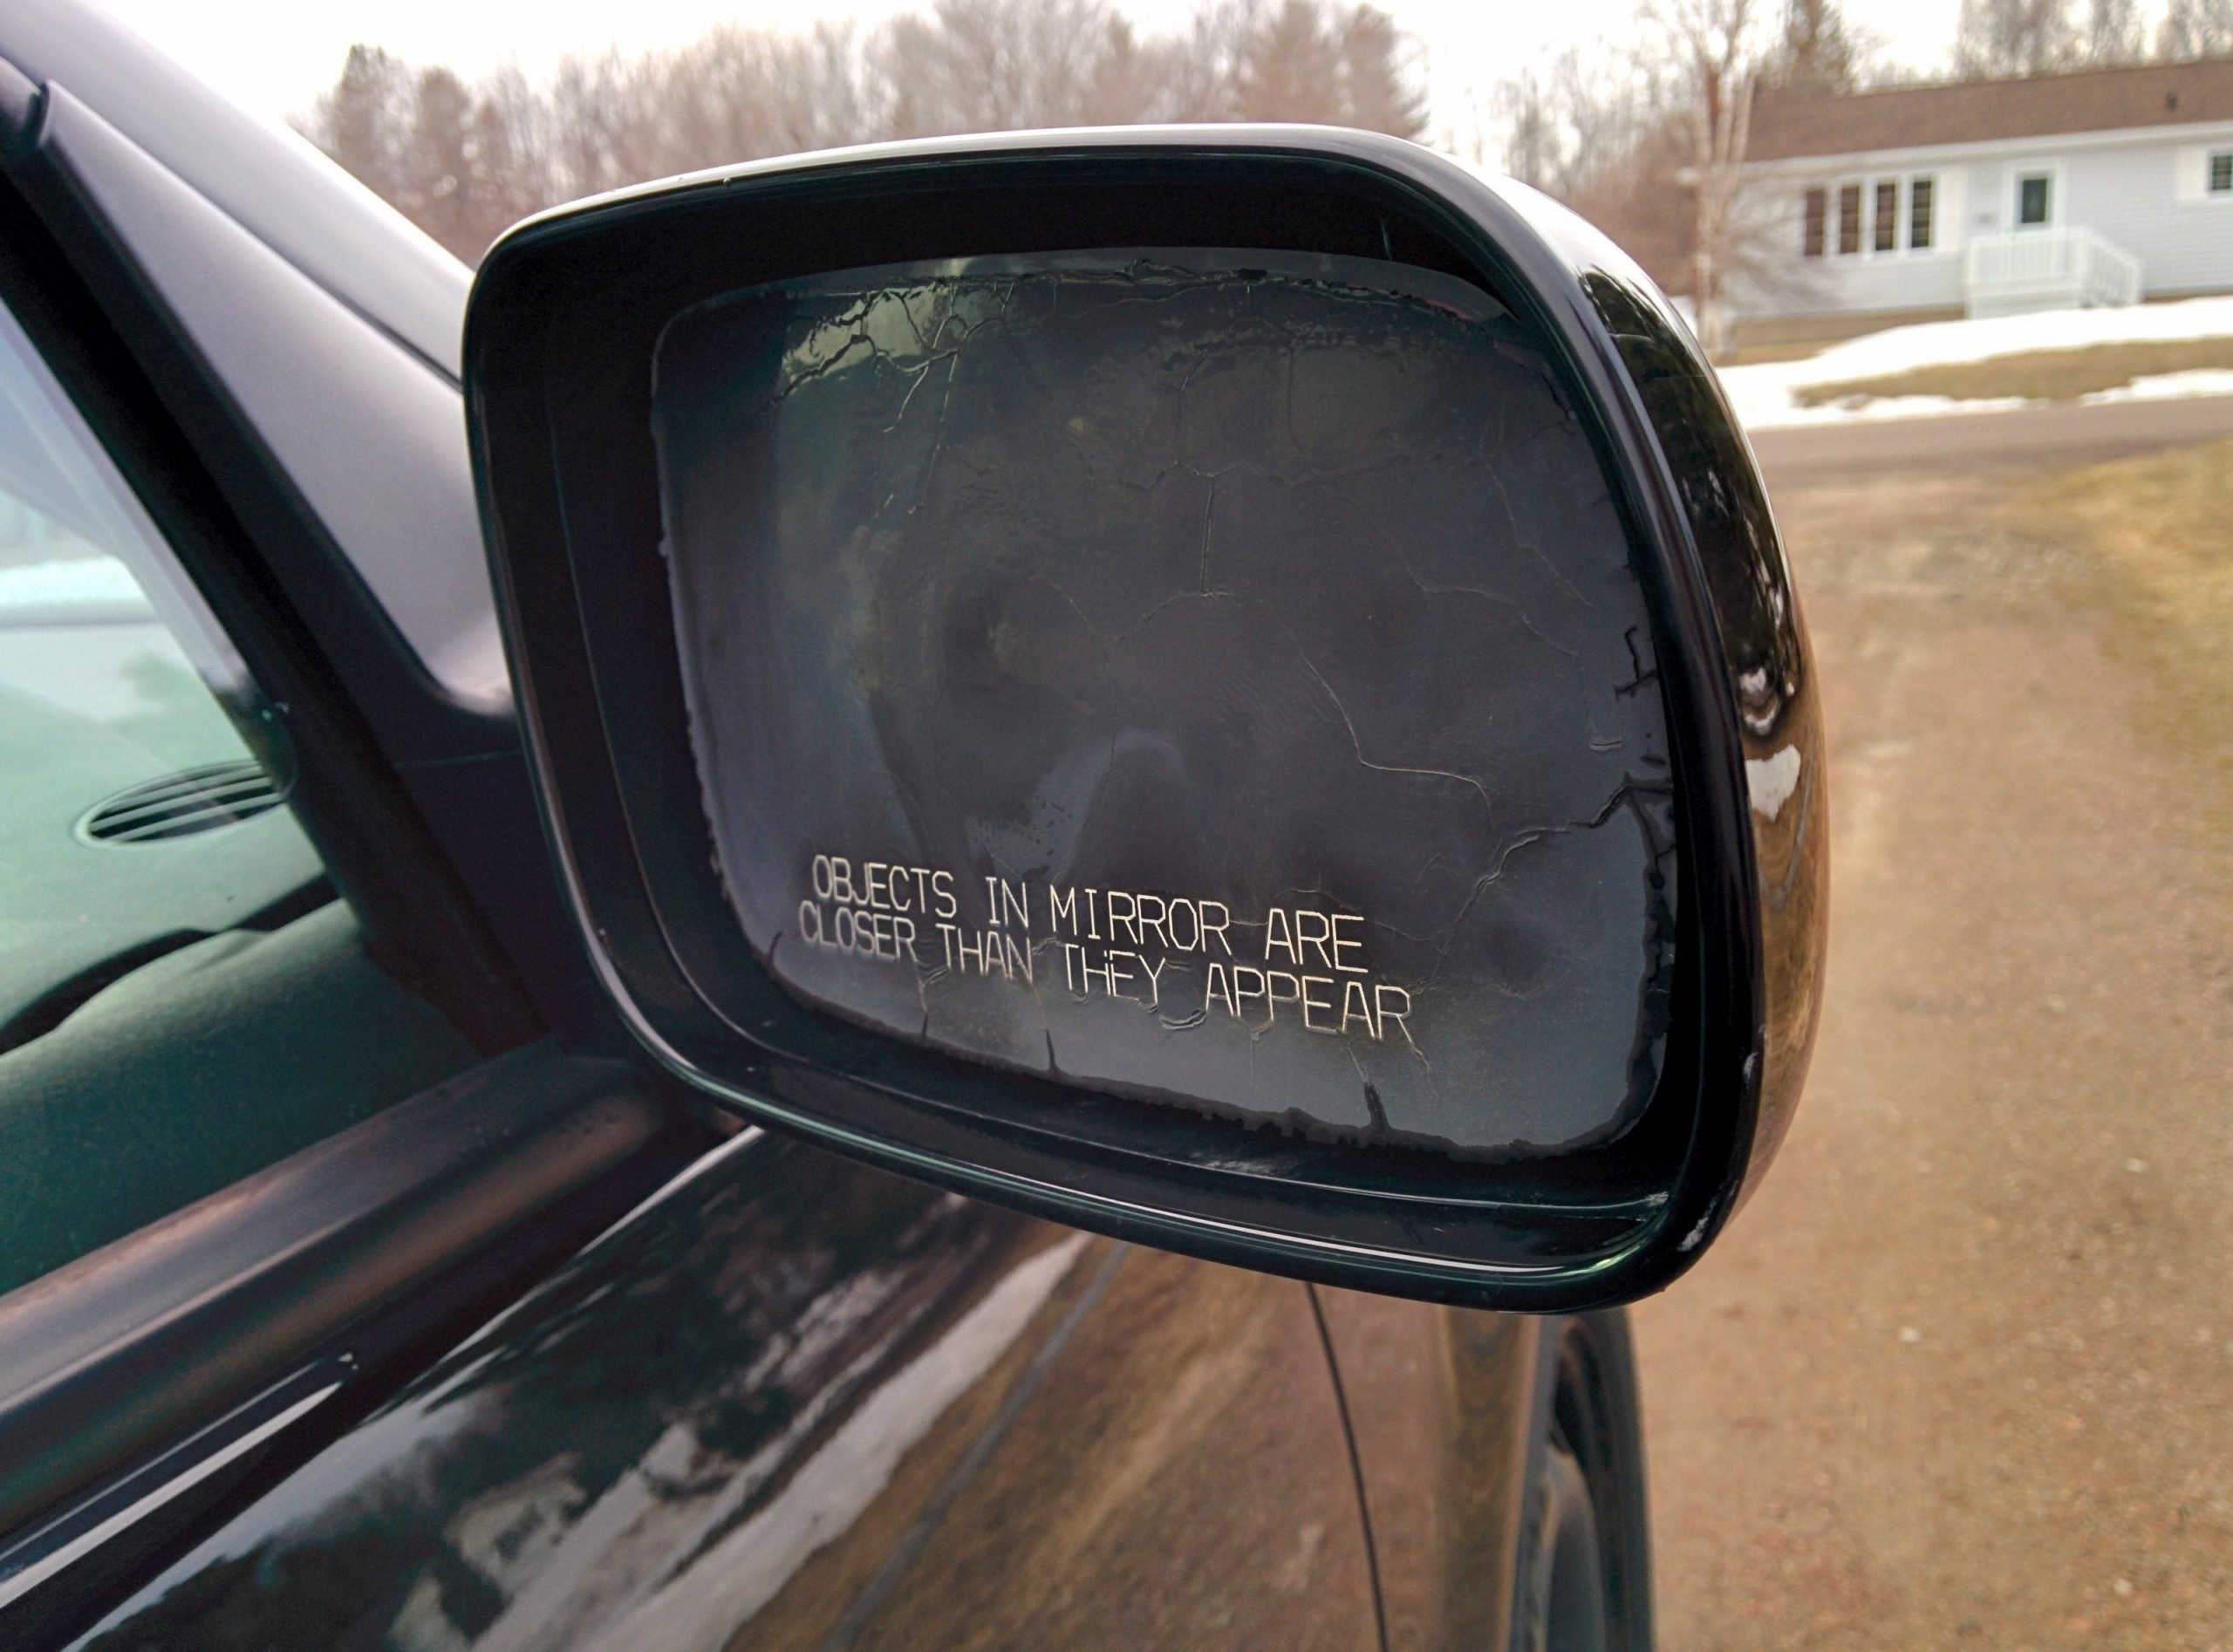 Side mirror fell off my car